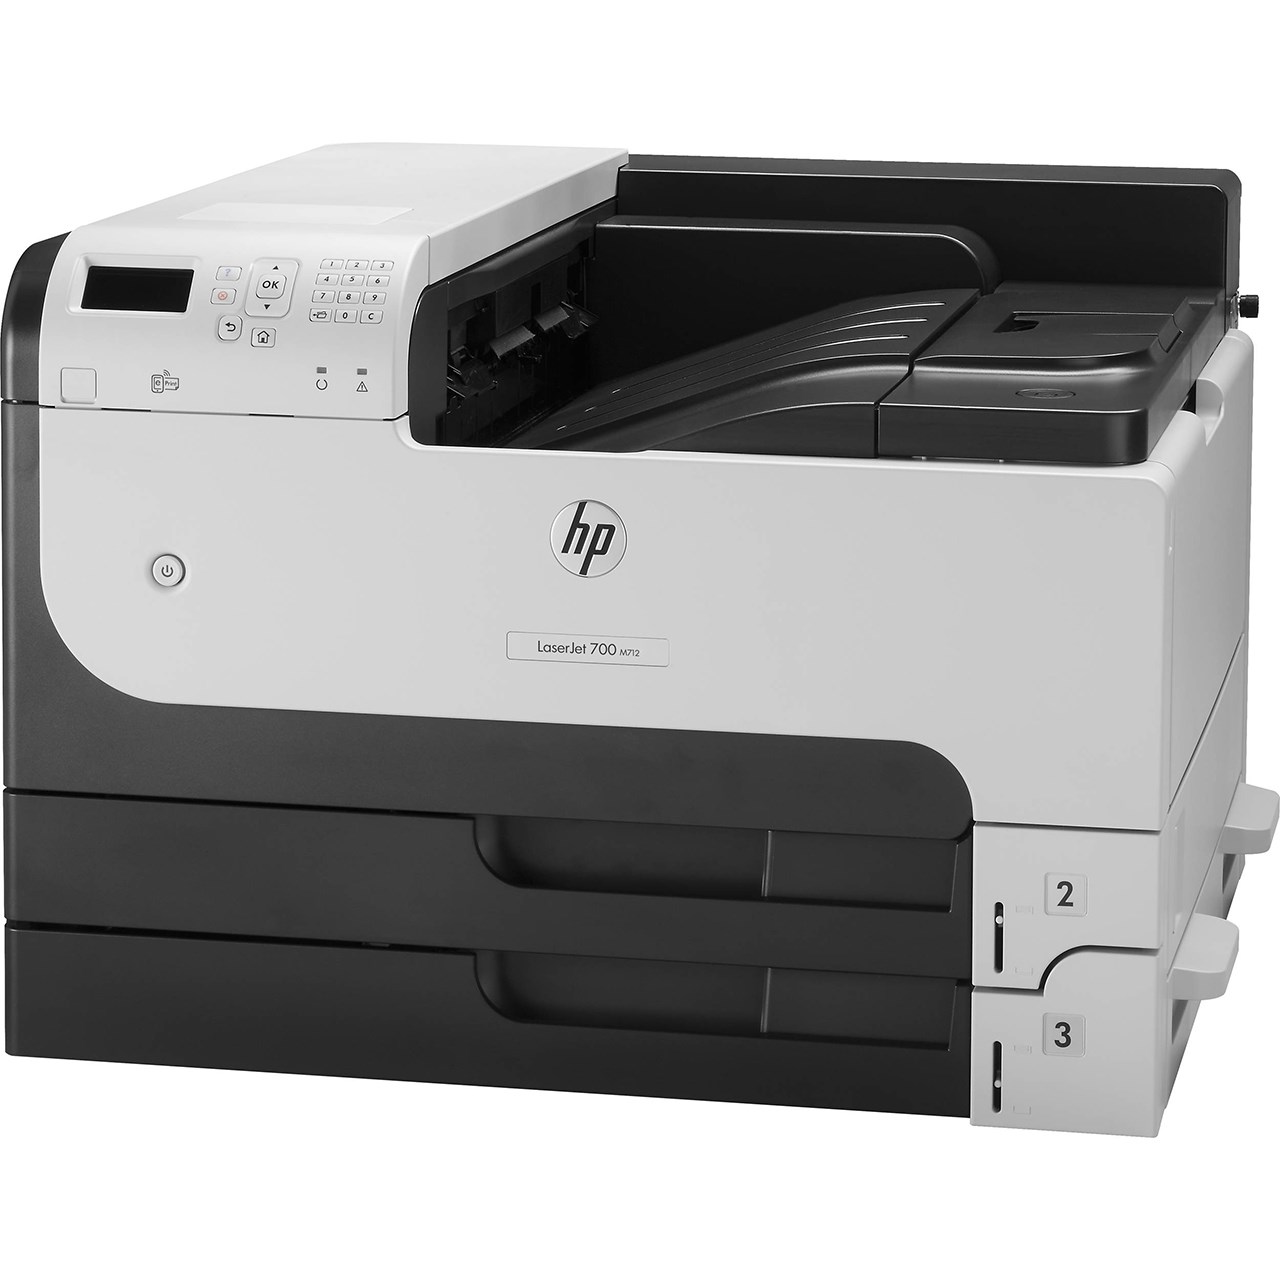 نکته خرید - قیمت روز پرینتر لیزری اچ پی مدل LaserJet Enterprise 700 printer M712dn خرید